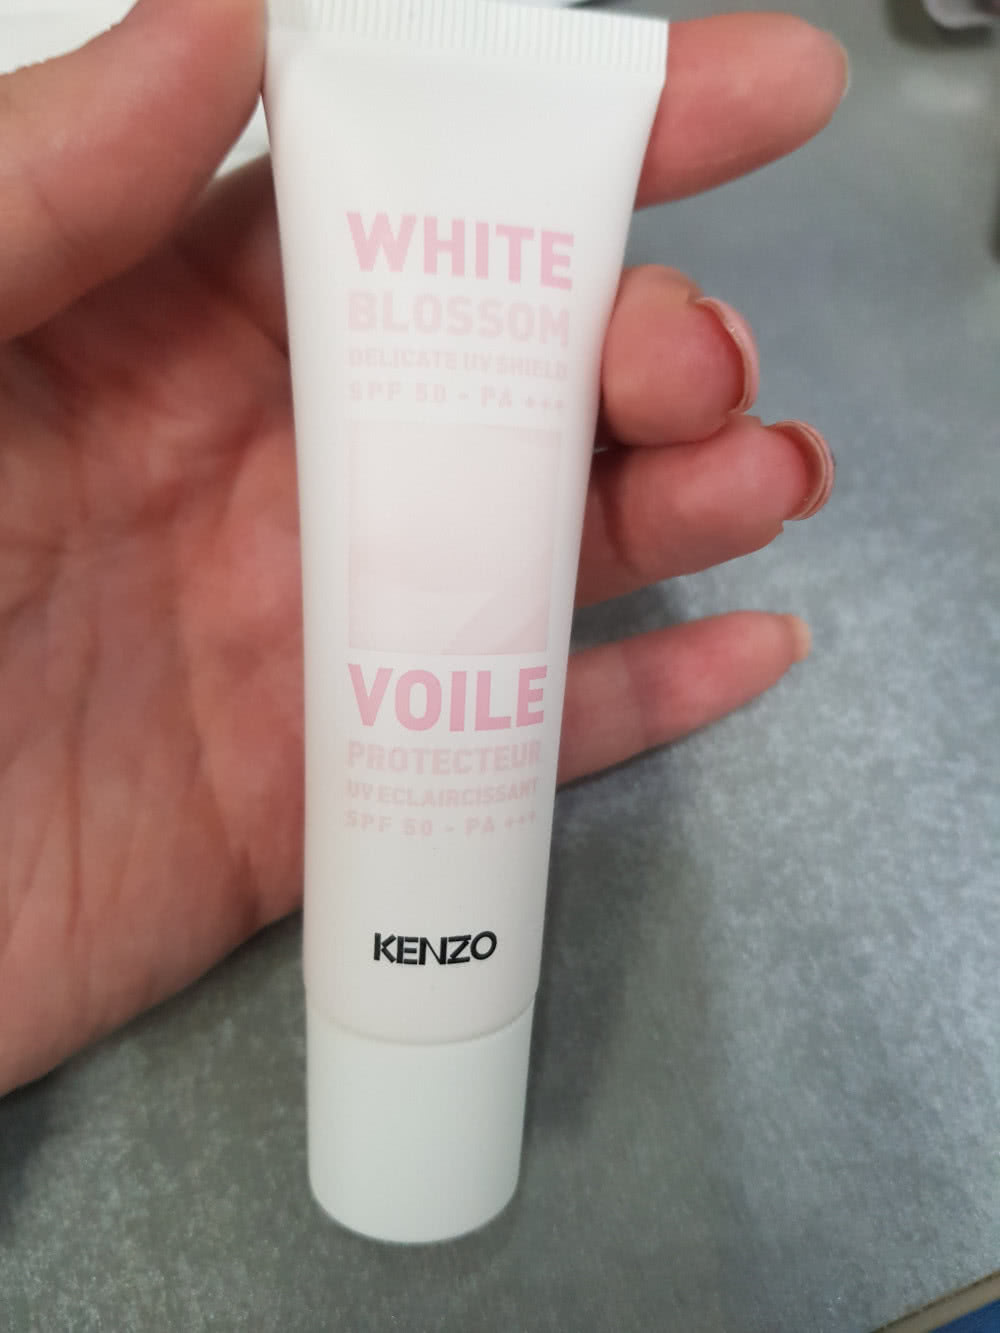 Kenzo white blossom spf 50